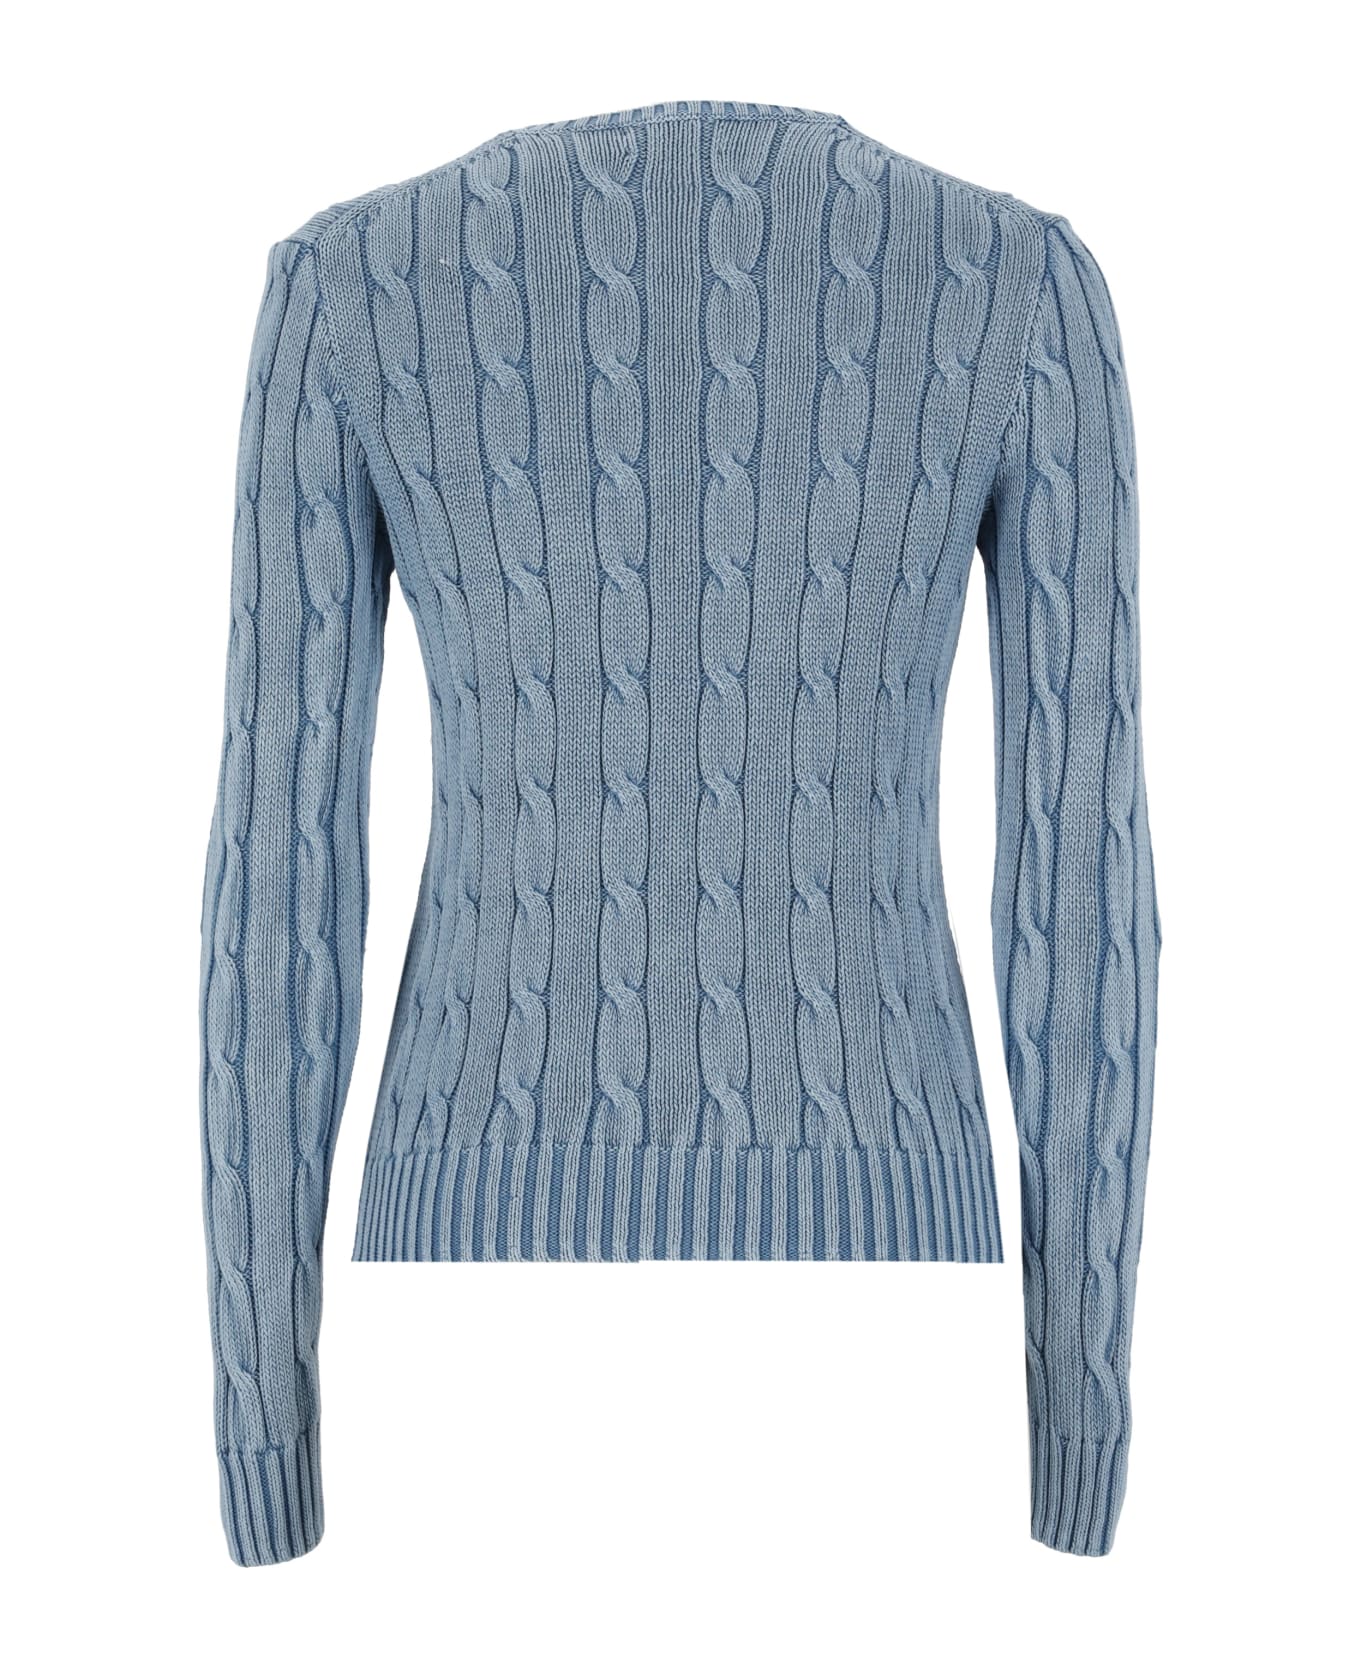 Polo Ralph Lauren Julianna Sweater - Light Blue